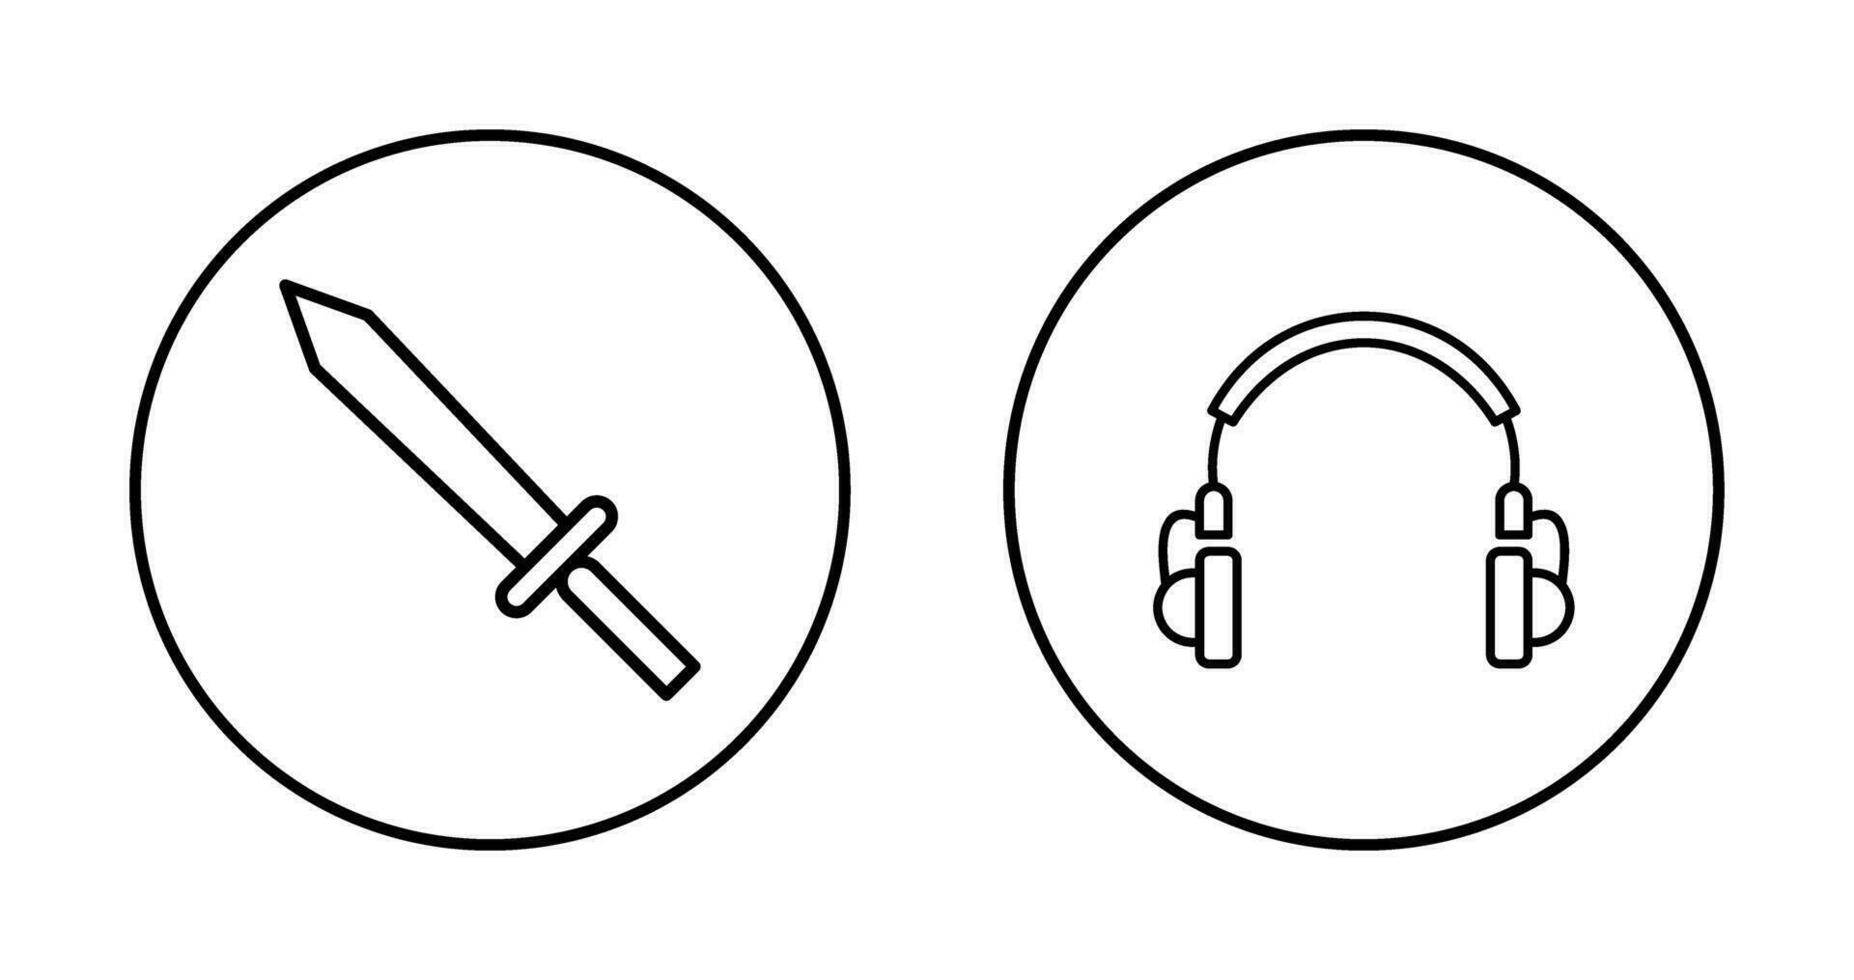 auriculares y espada icono vector